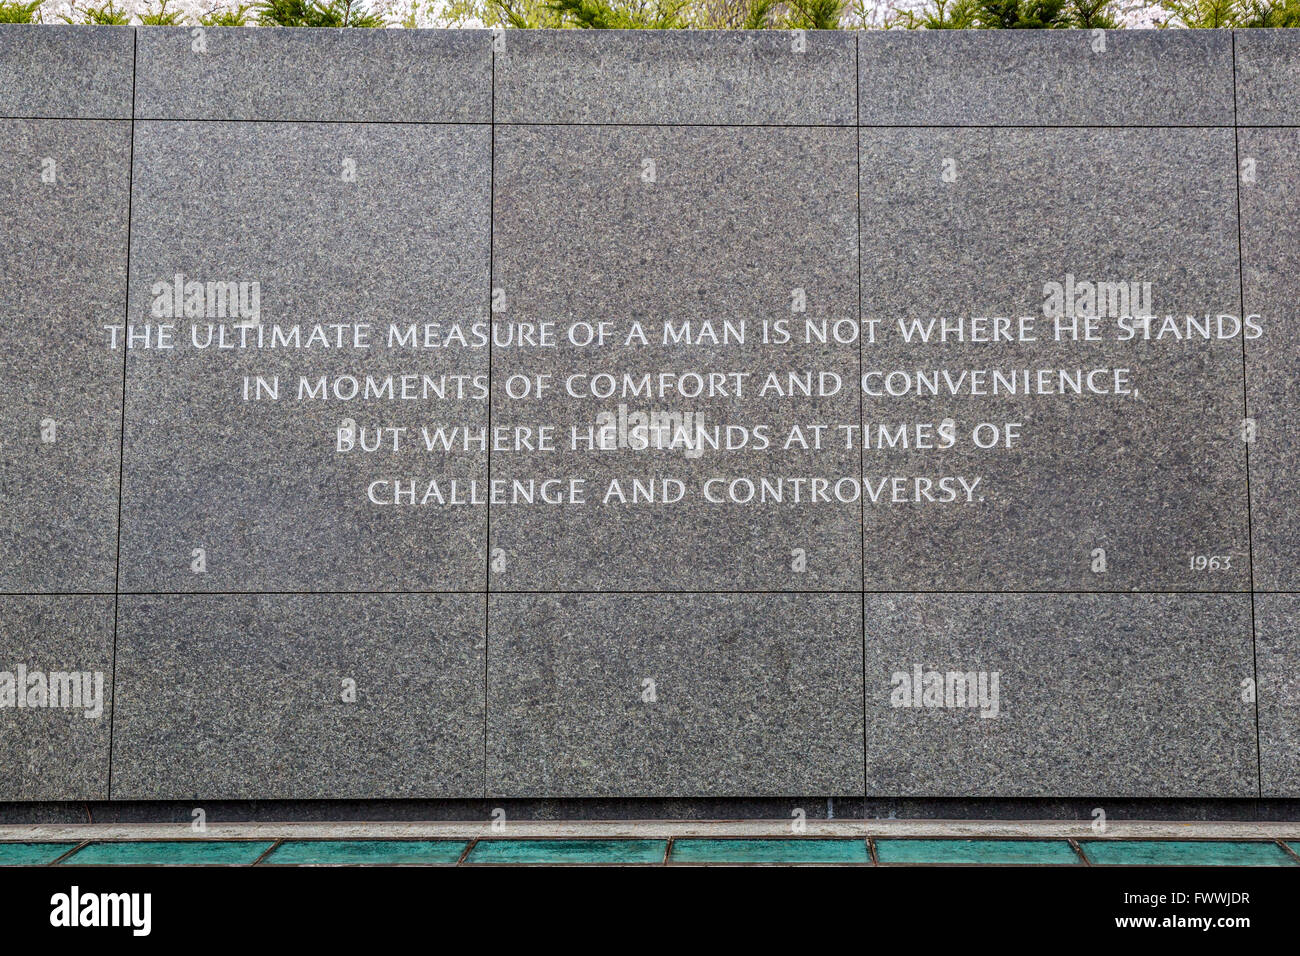 Washington, D.C., Martin Luther King, Jr. Memorial Cotización. Foto de stock